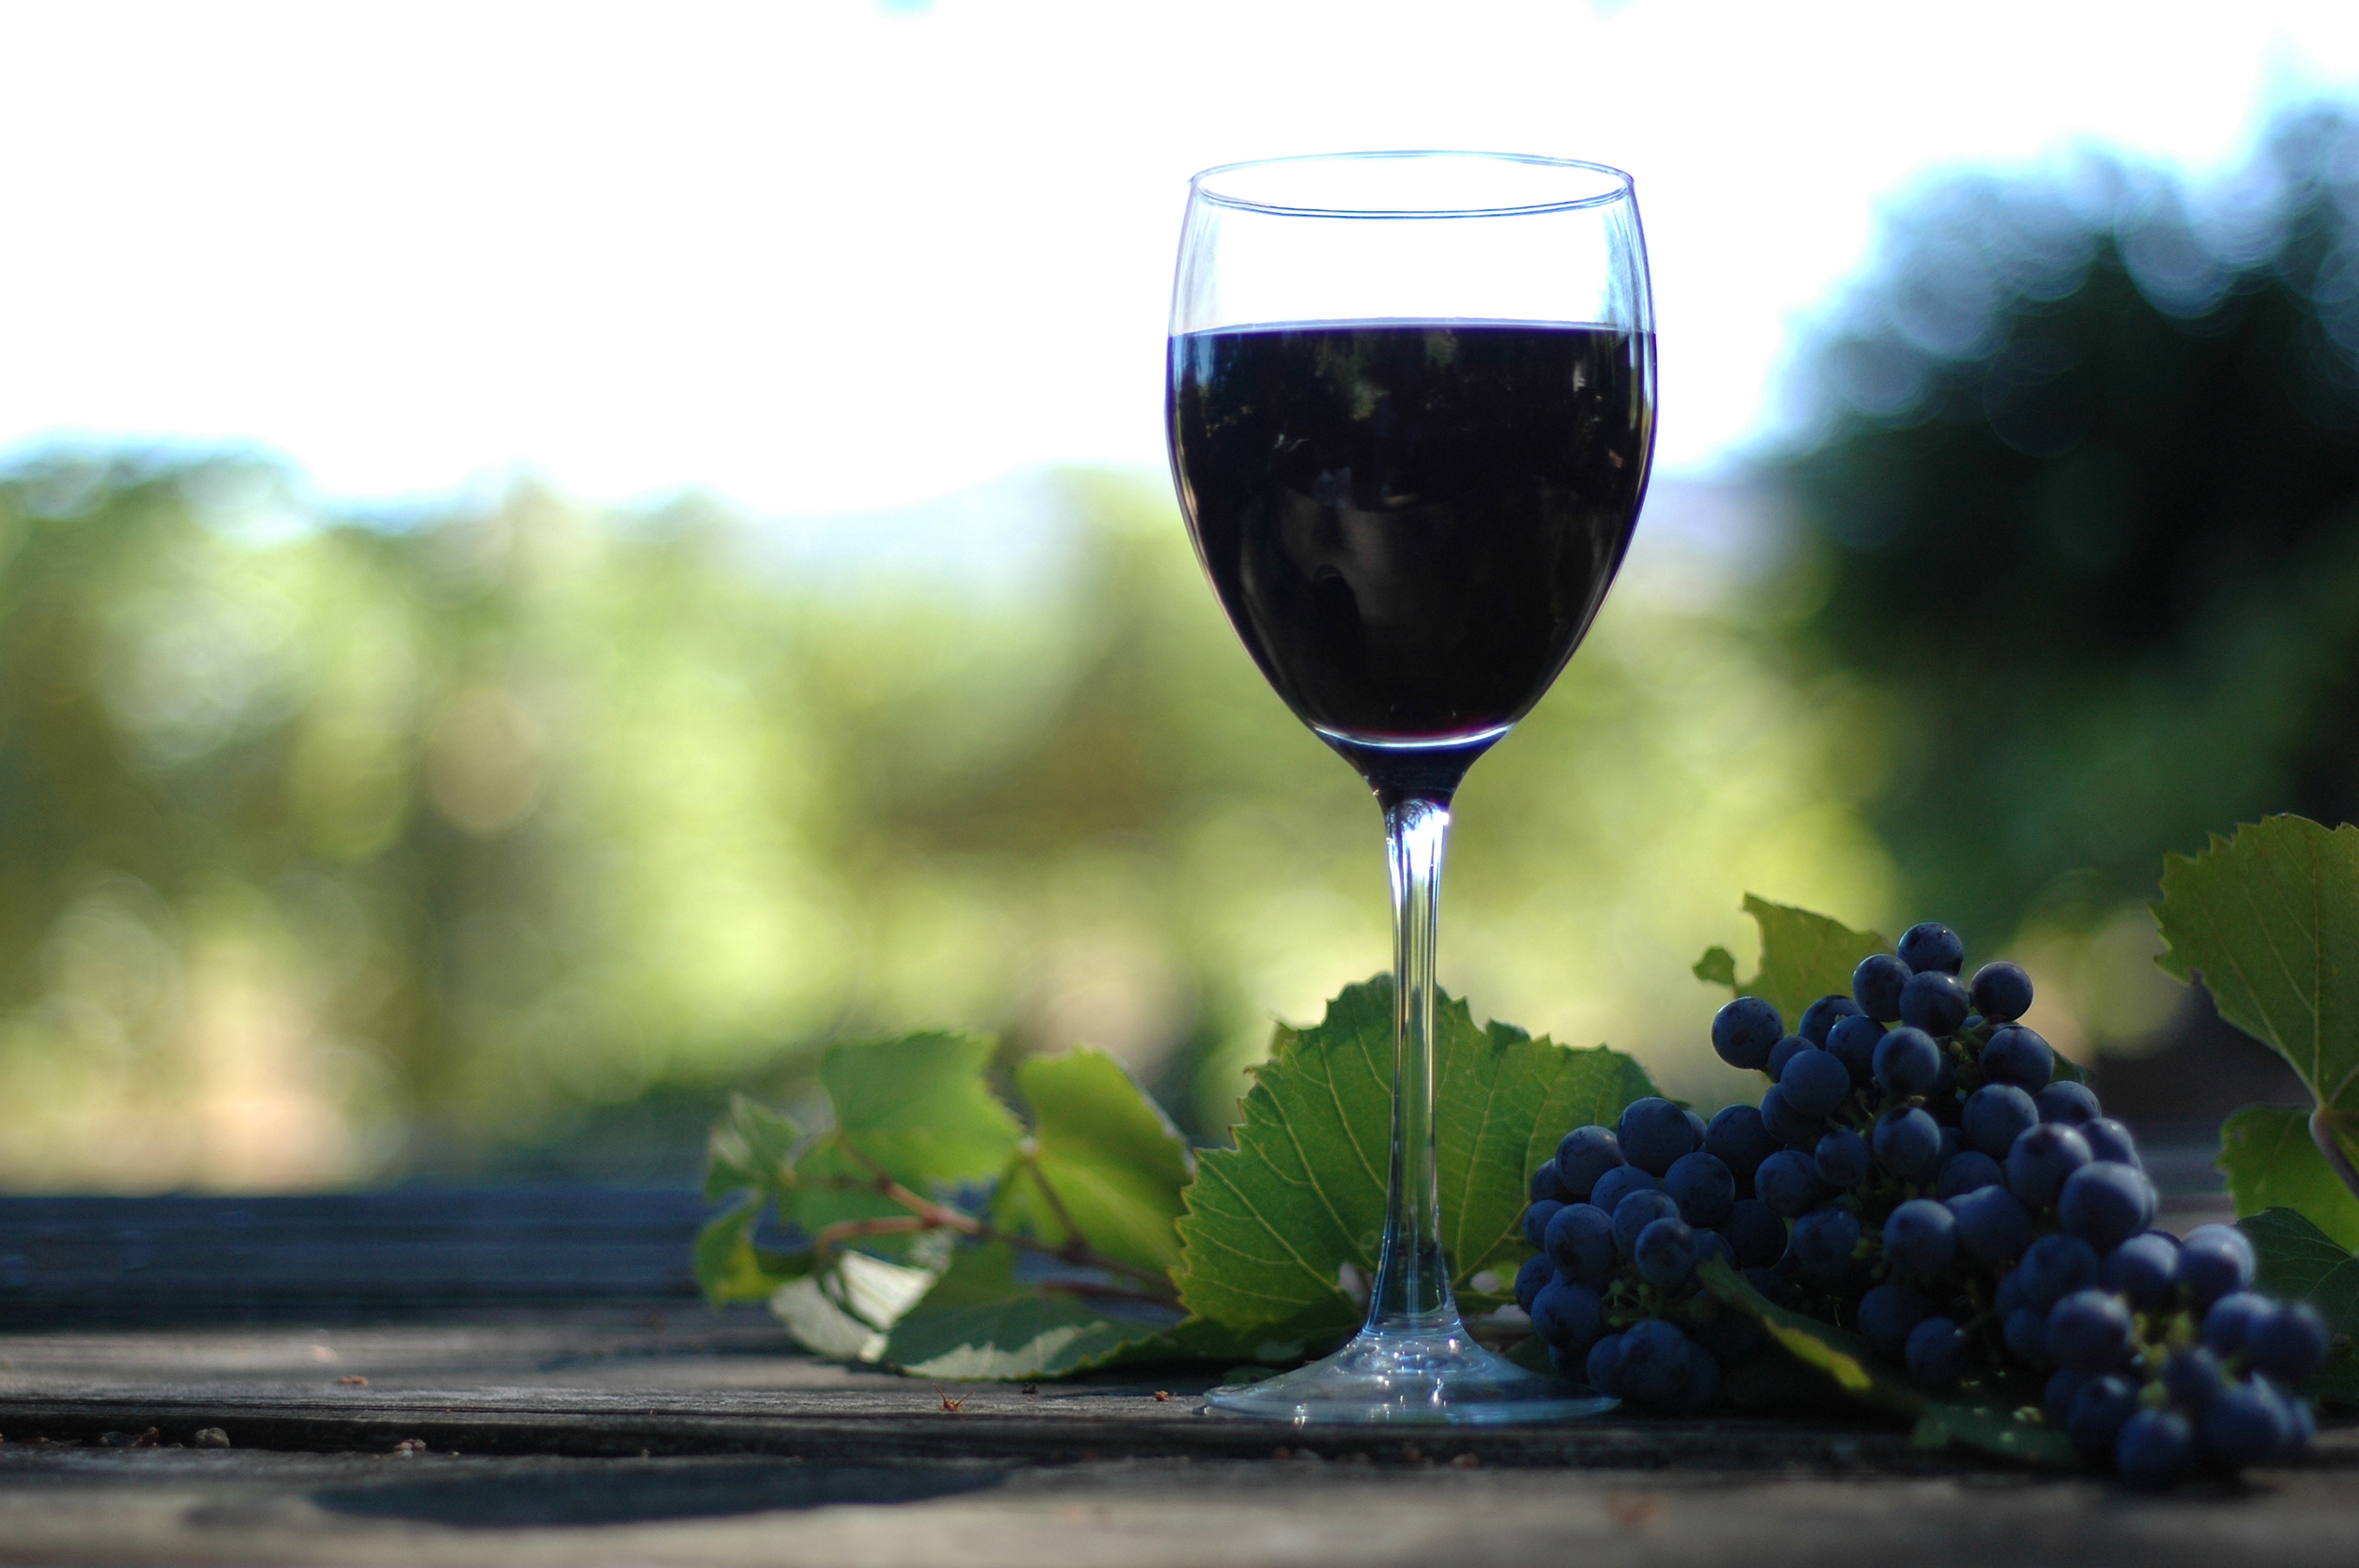 Картинку вине. Виноградное вино. Виноград на темном фоне. Вино обои. Вино на синем фоне.